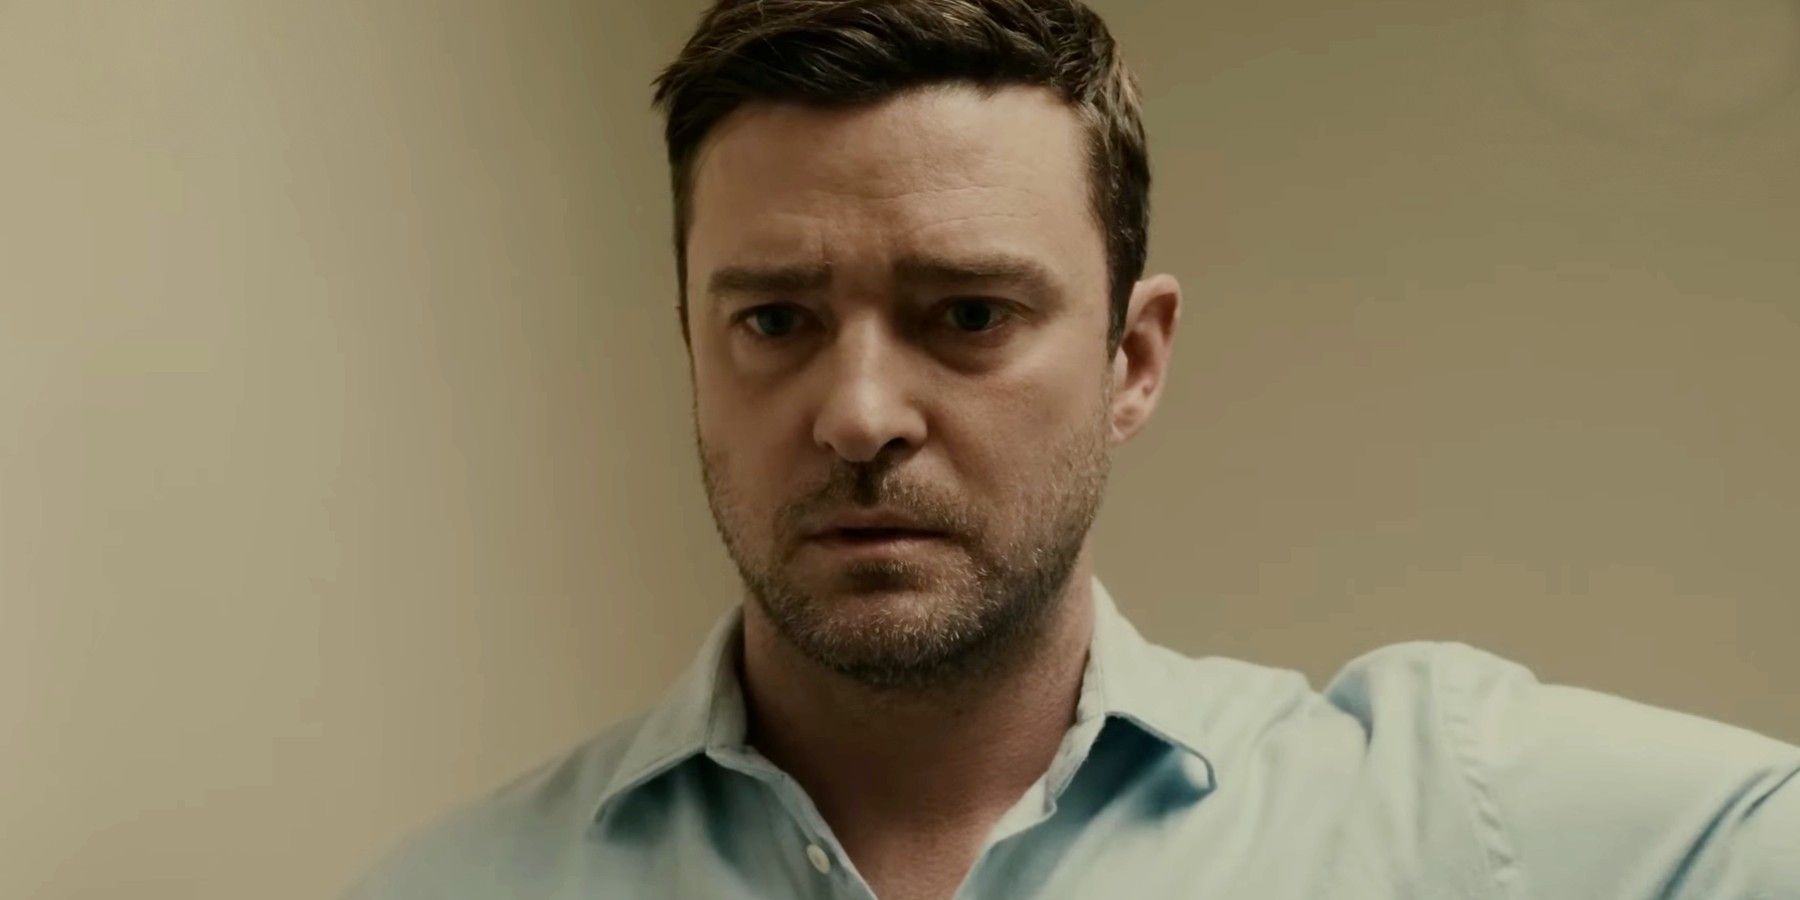 El nuevo thriller criminal de Netflix revelado en el tráiler de Reptile protagonizado por Justin Timberlake y Alicia Silverstone